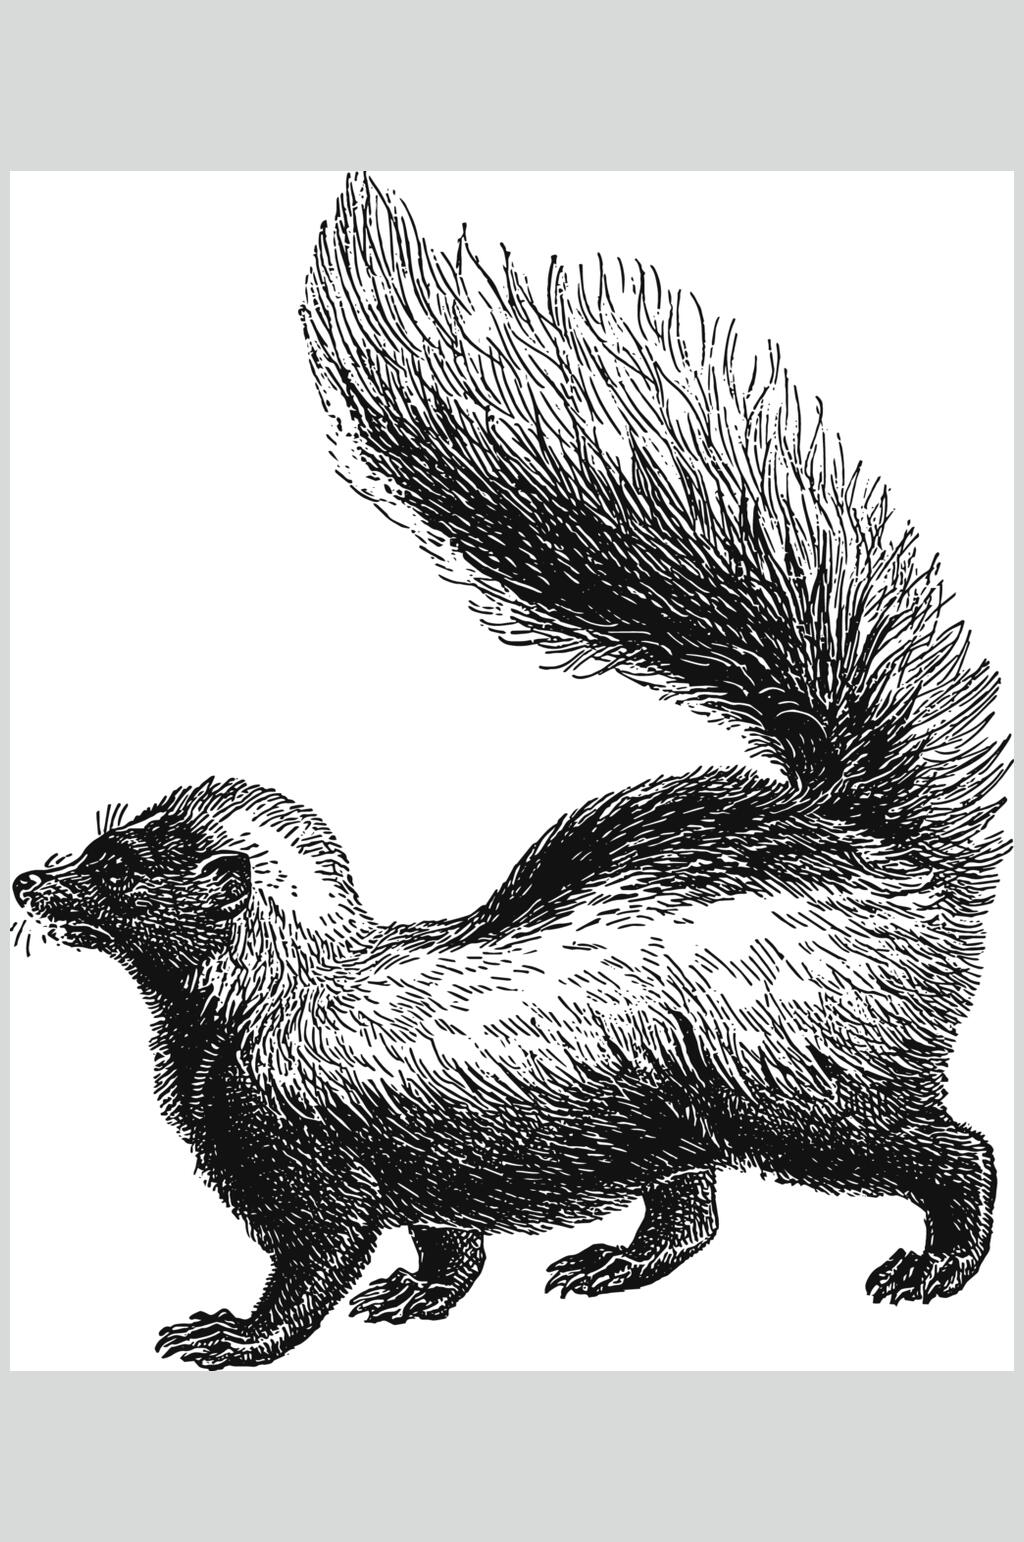 各种动物尾巴的画法图片